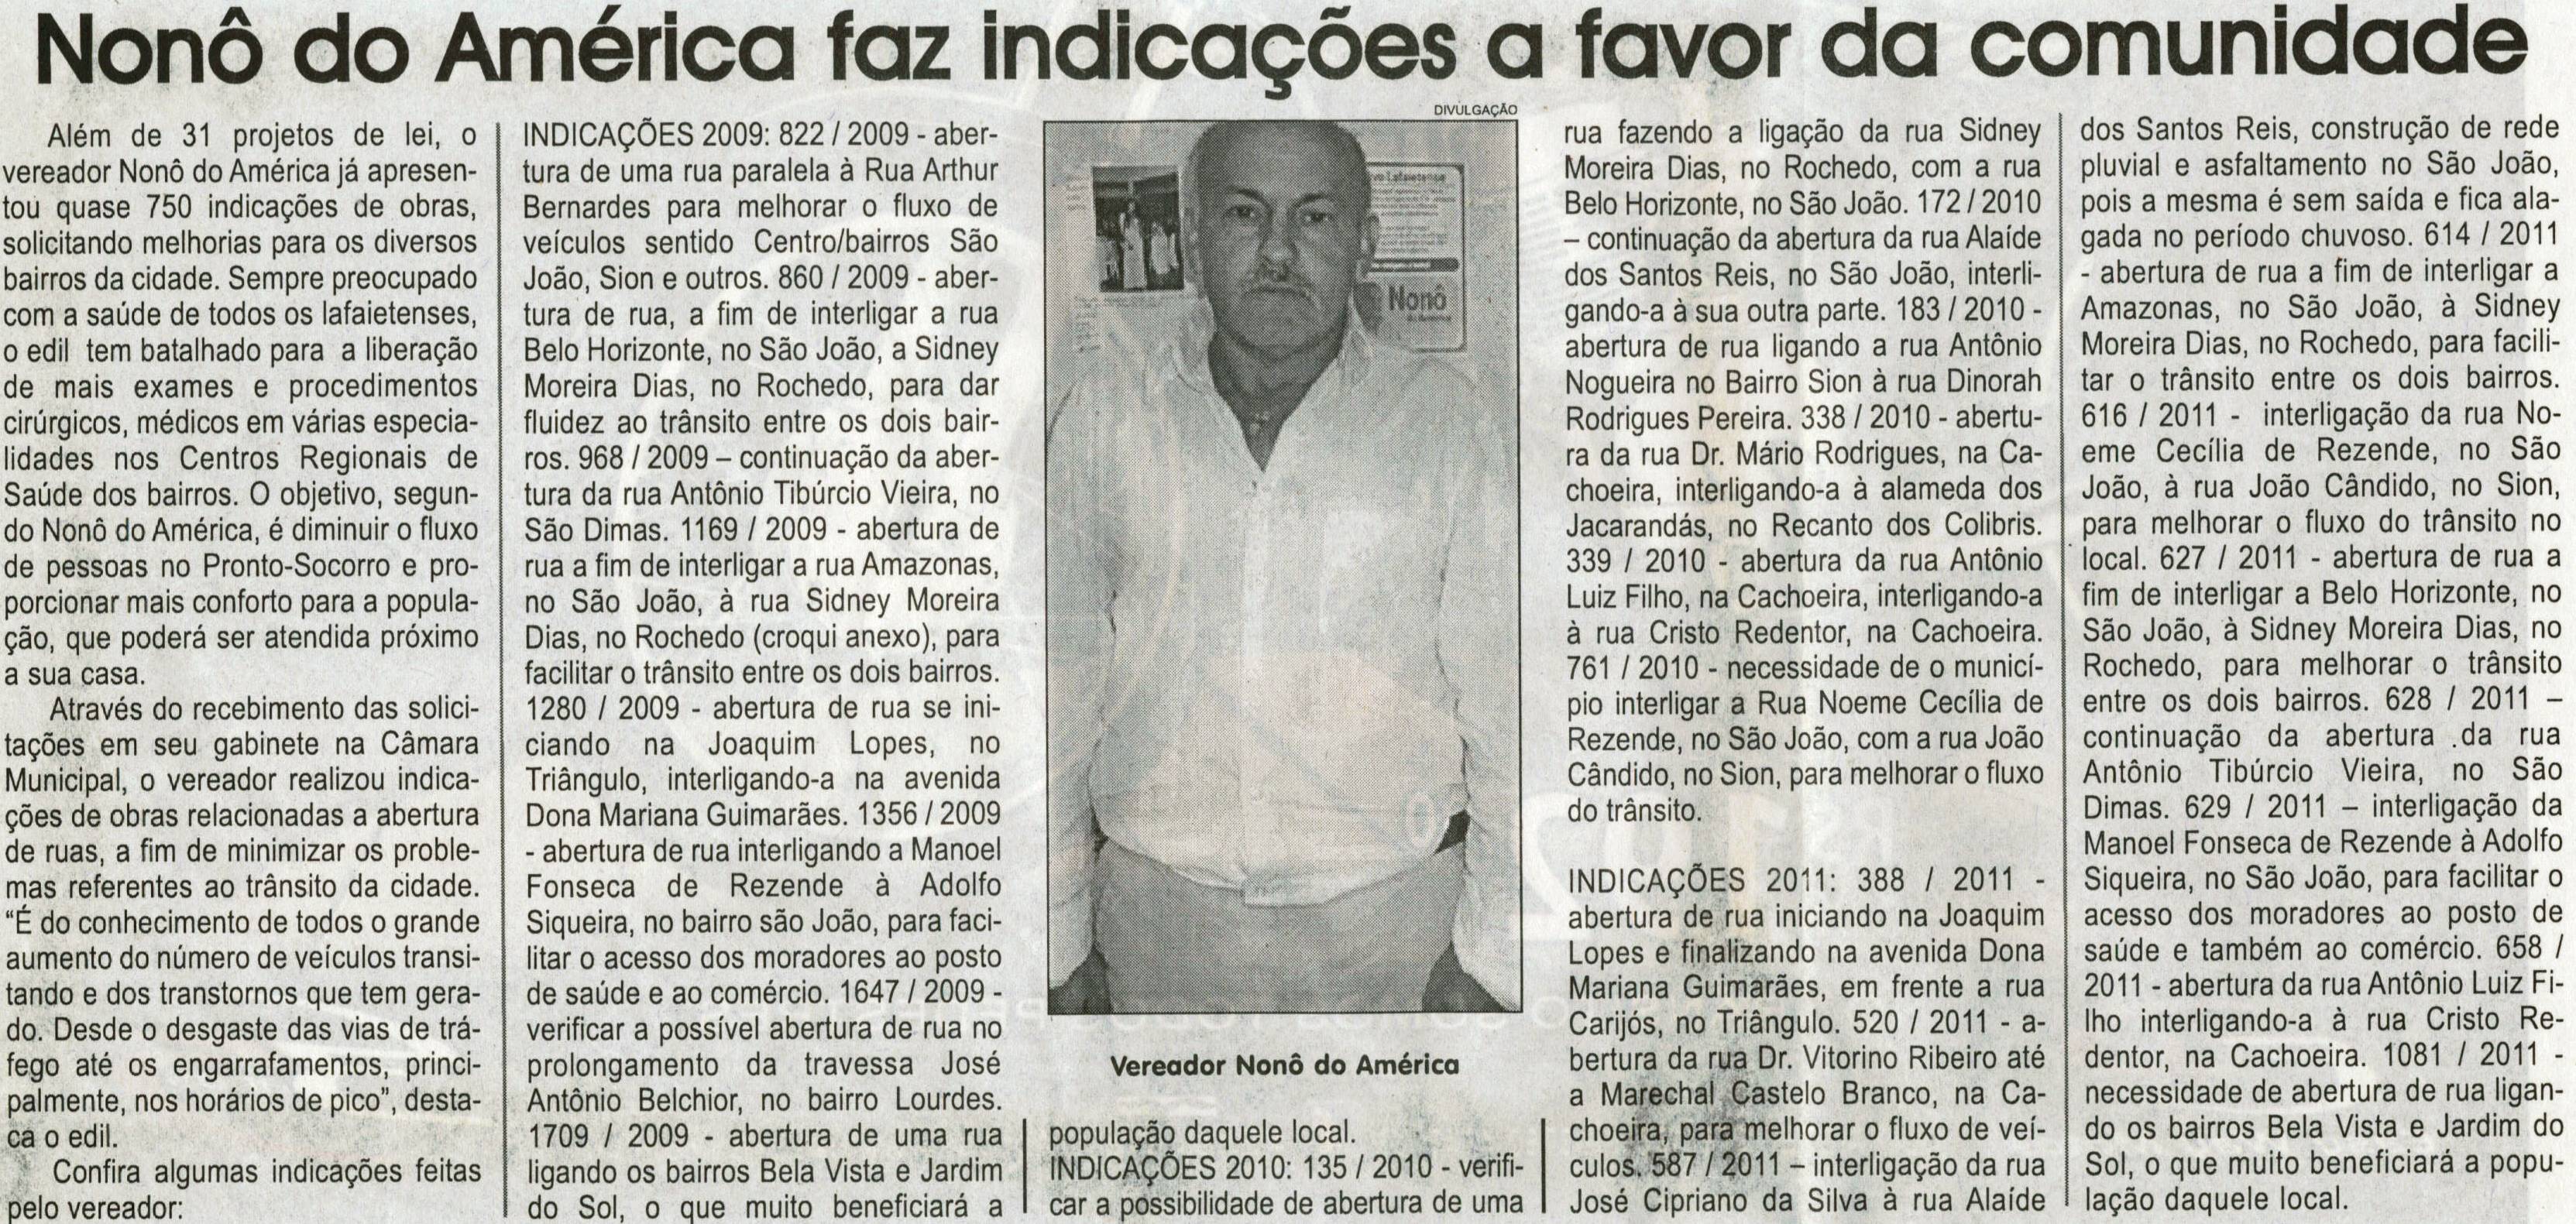 Nonô do América faz indicações a favor da comunidade, Jornal Correio da Cidade, Conselheiro Lafaiete,10 mar. 2012, p. 06.